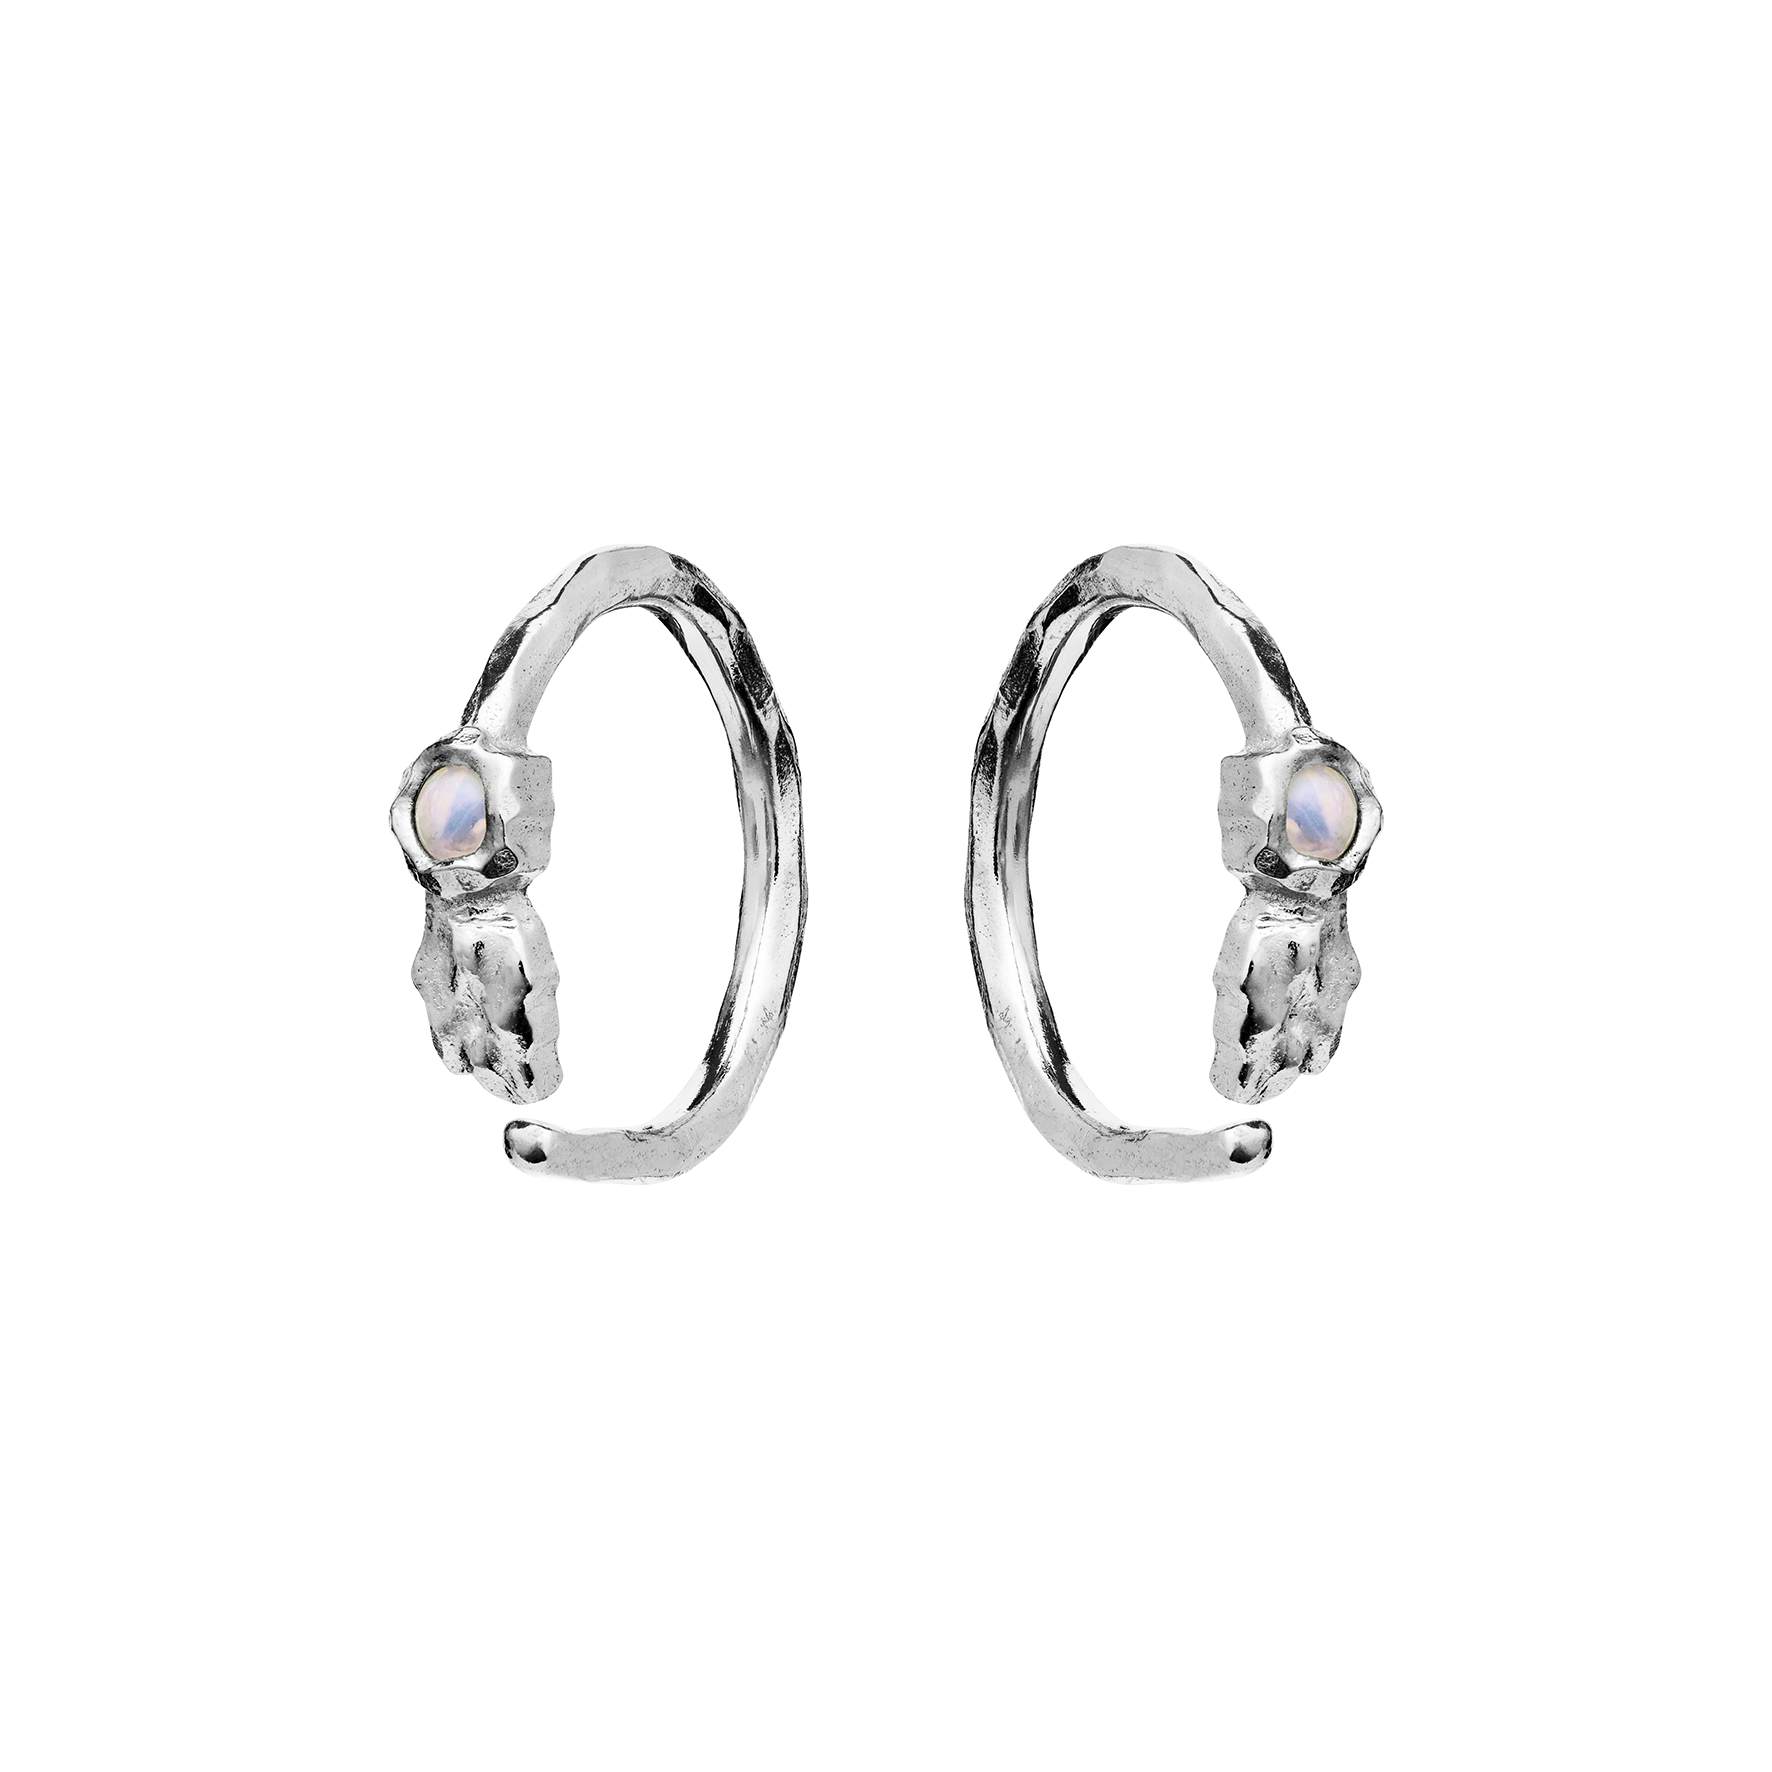 Florus Earrings from Maanesten in Silver Sterling 925